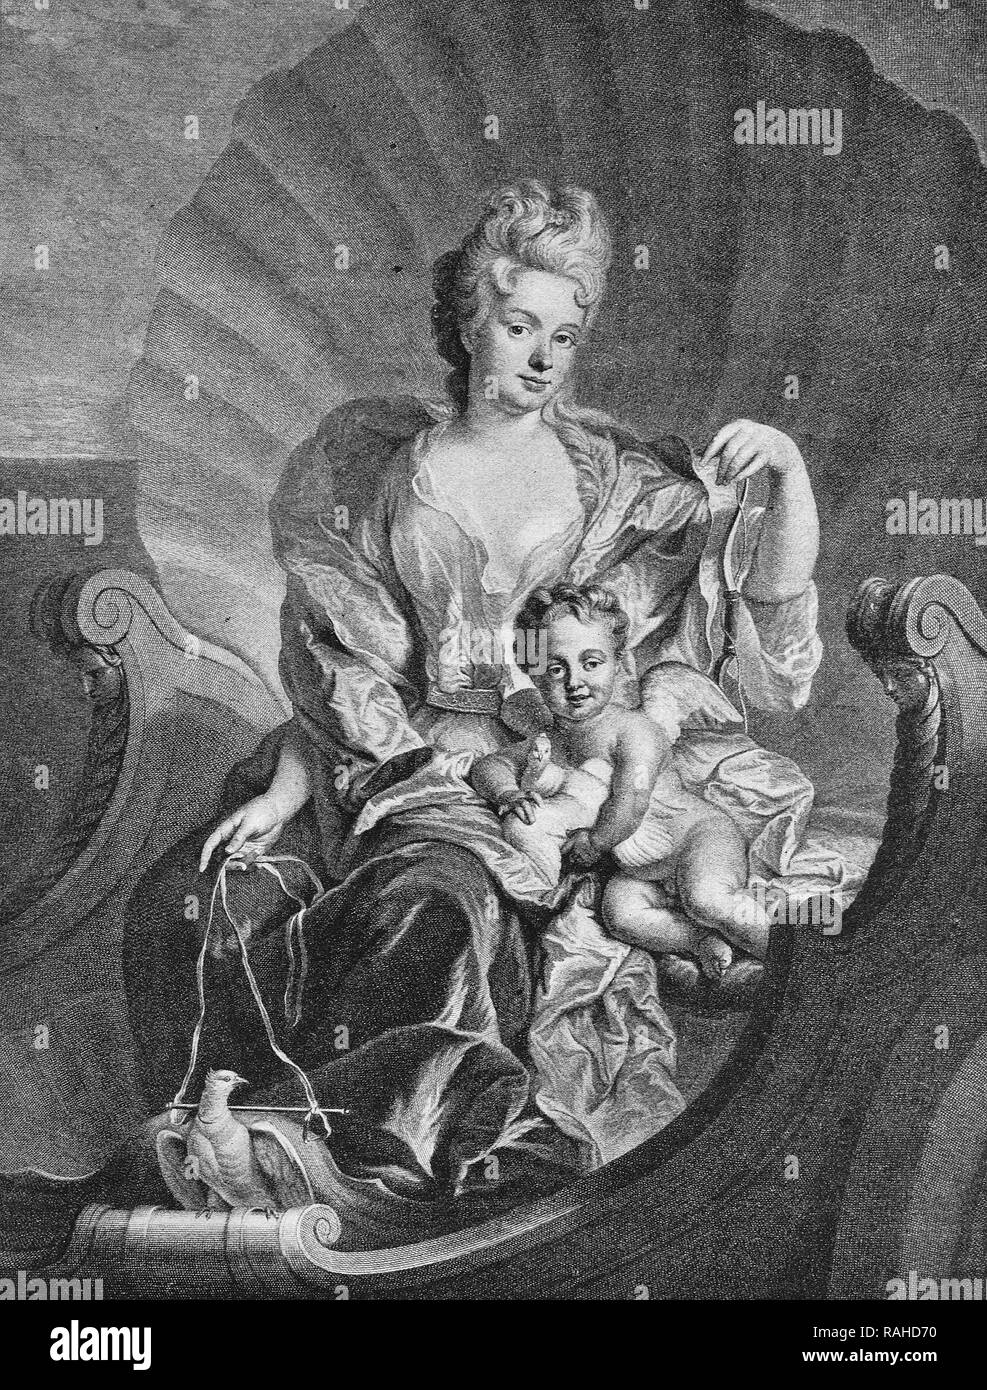 La comtesse Cosel, maîtresse d'Auguste II le Fort, affiché comme Vénus, gravure sur cuivre d'après une peinture par F de Troy, 1850 Banque D'Images